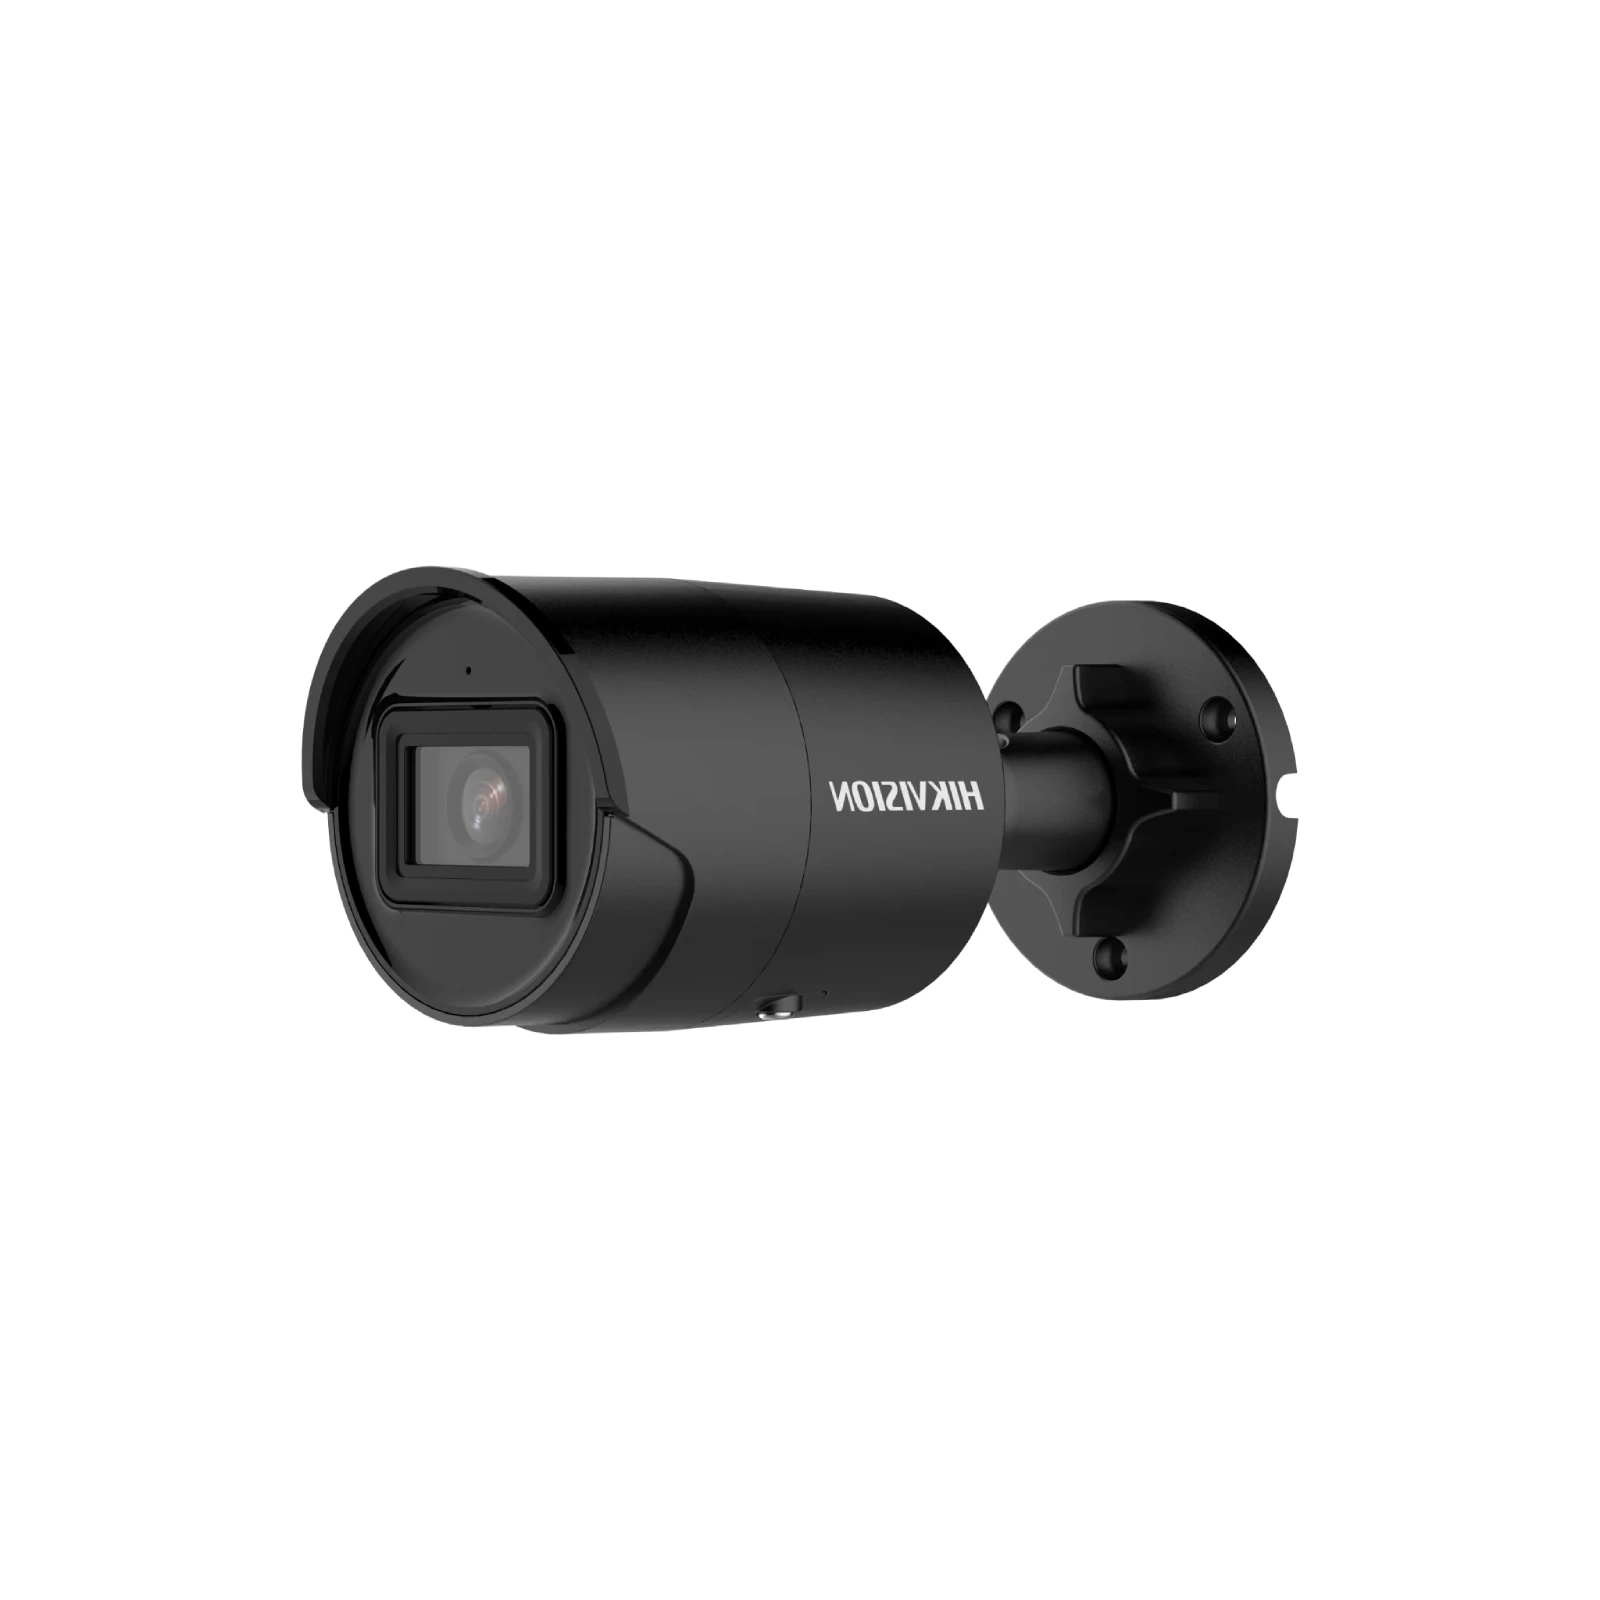 Камера відеоспостереження Hikvision DS-2CD2043G2-IU-B (2.8)